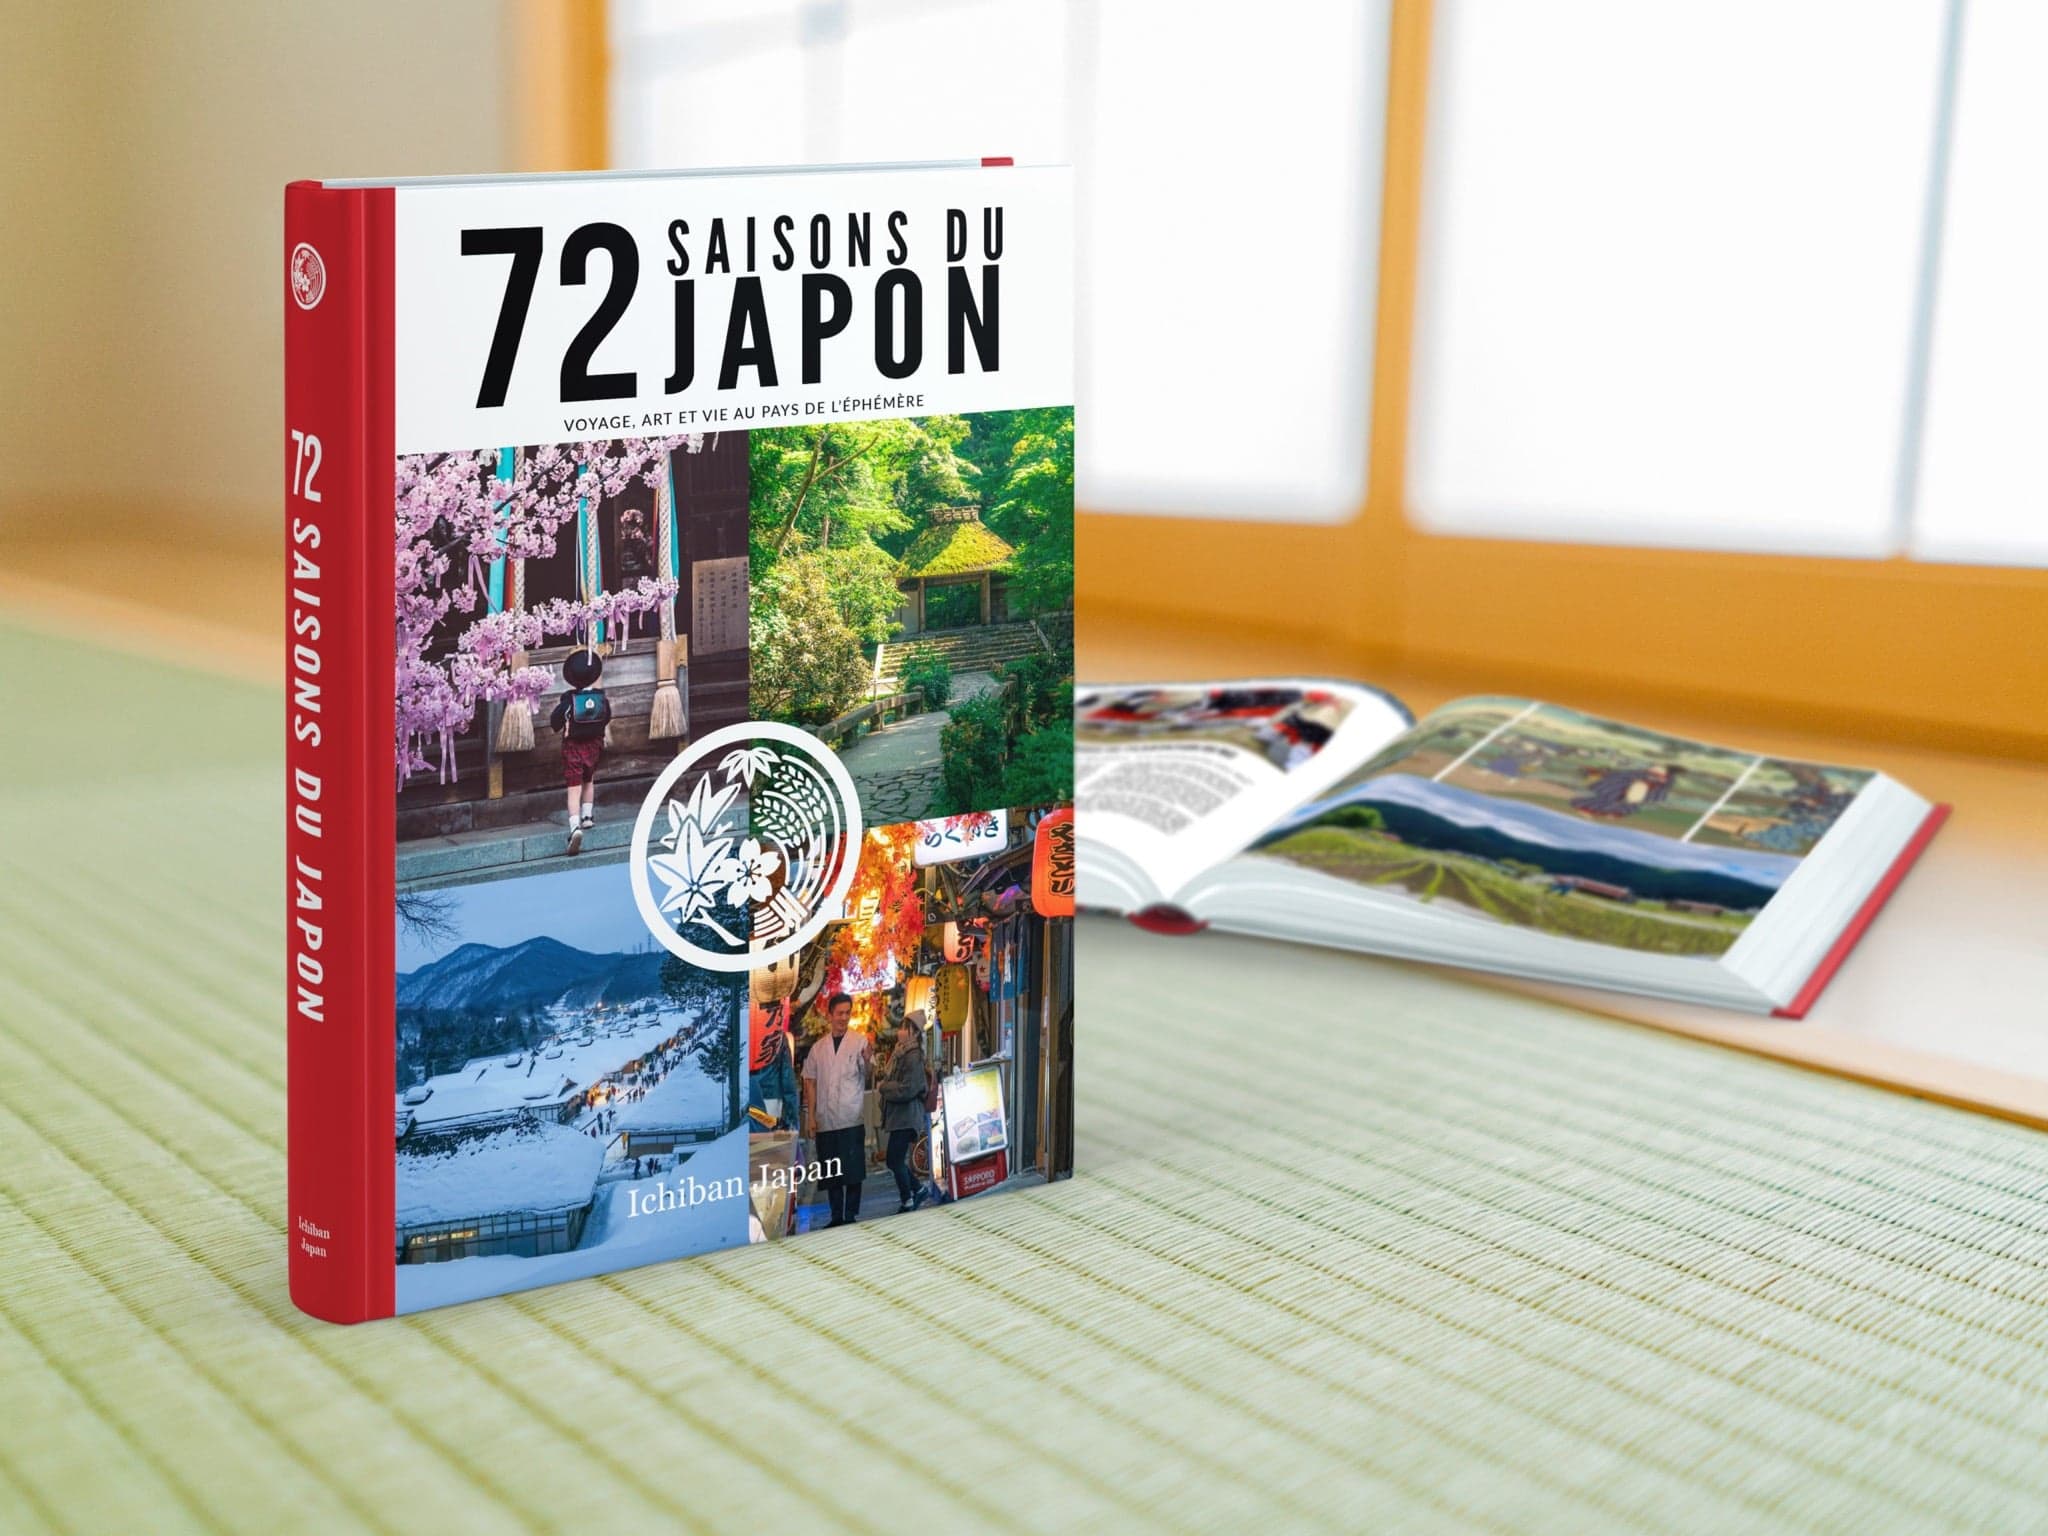 72 saisons du Japon par Ichiban Japan